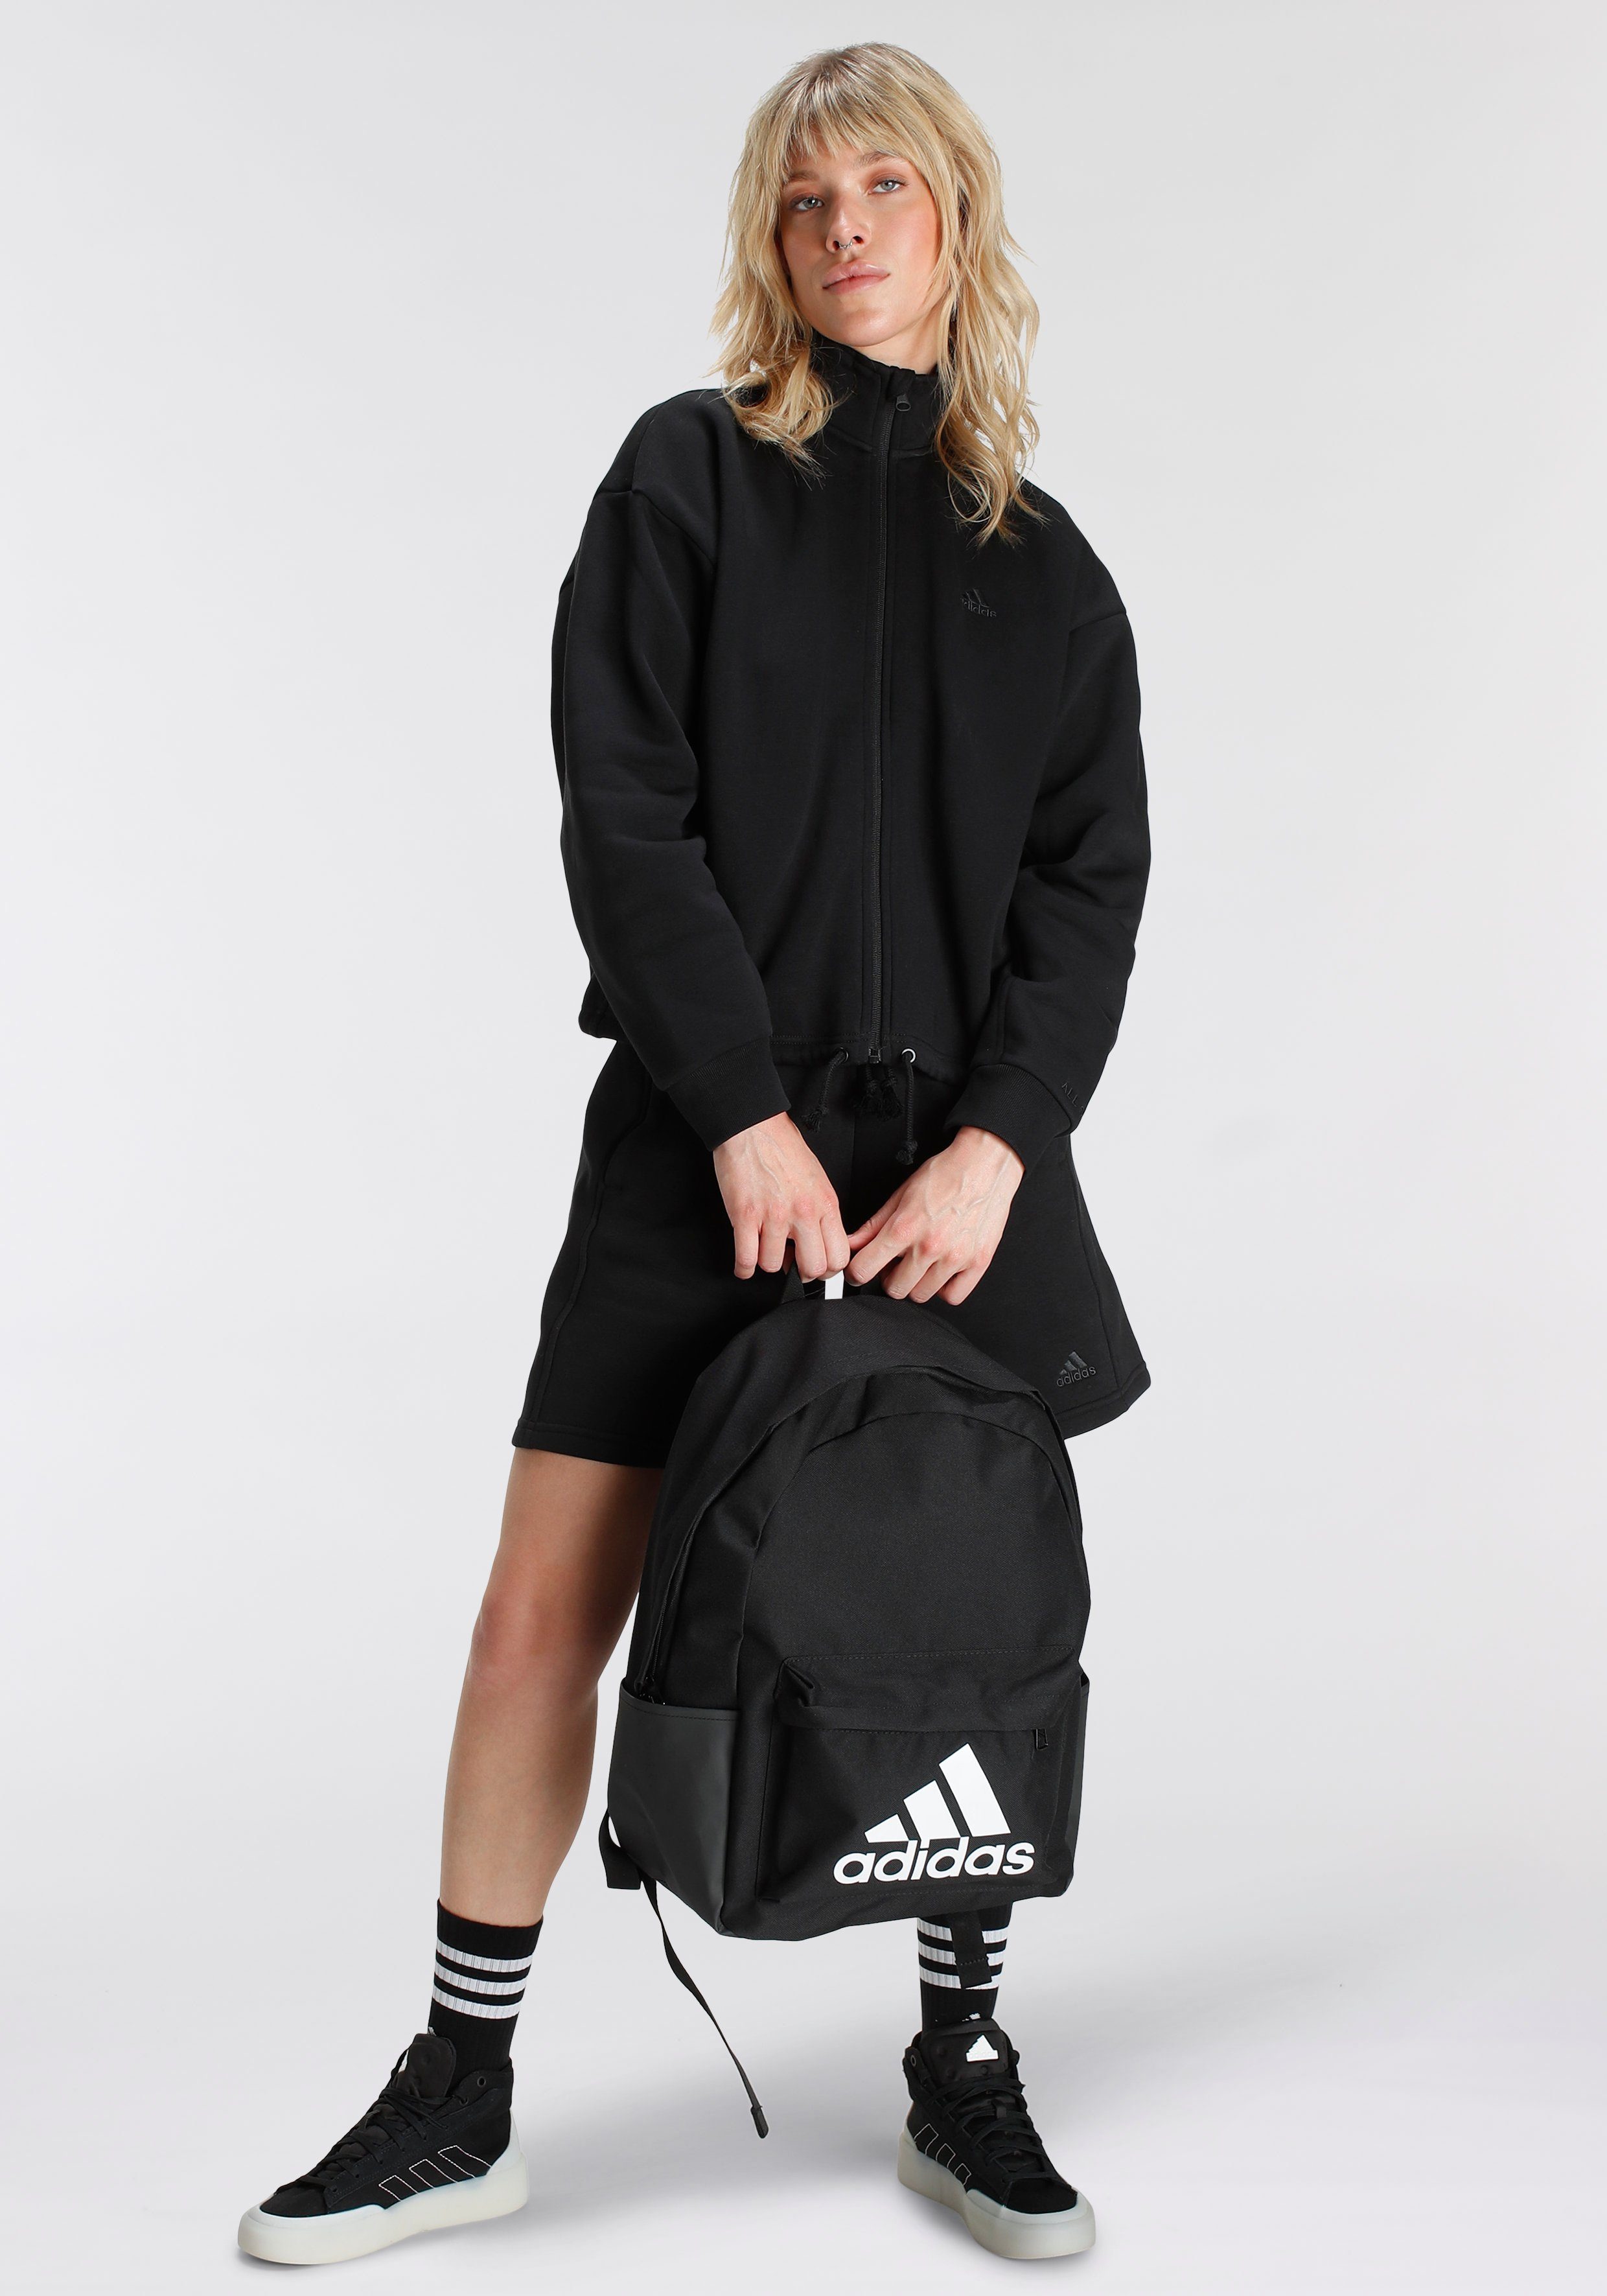 ALL Black adidas SZN Outdoorjacke TRAININGSJACKE Sportswear